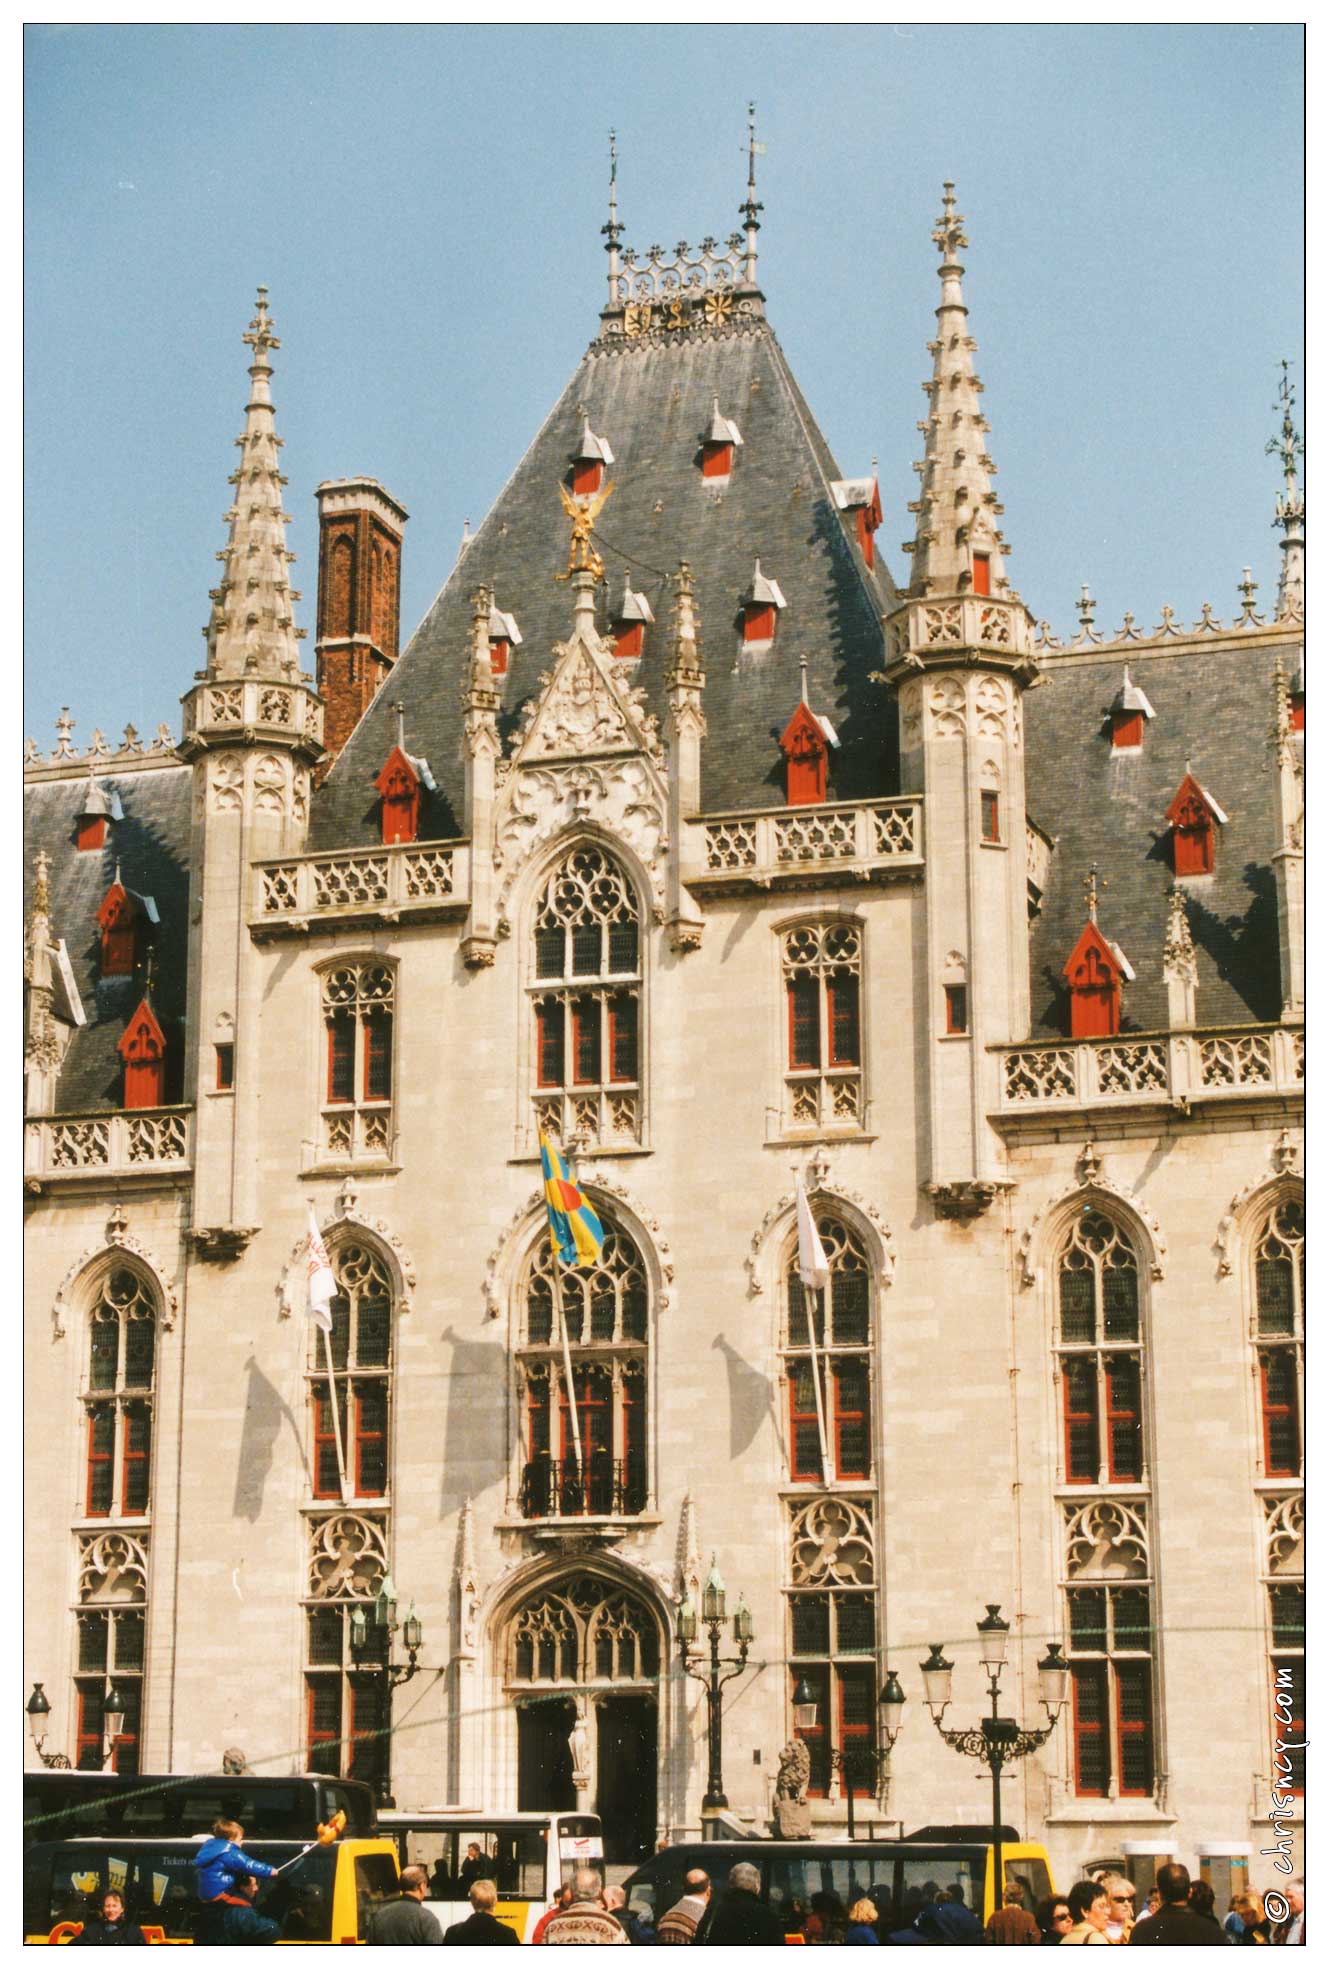 19990400-0024-Brugge.jpg